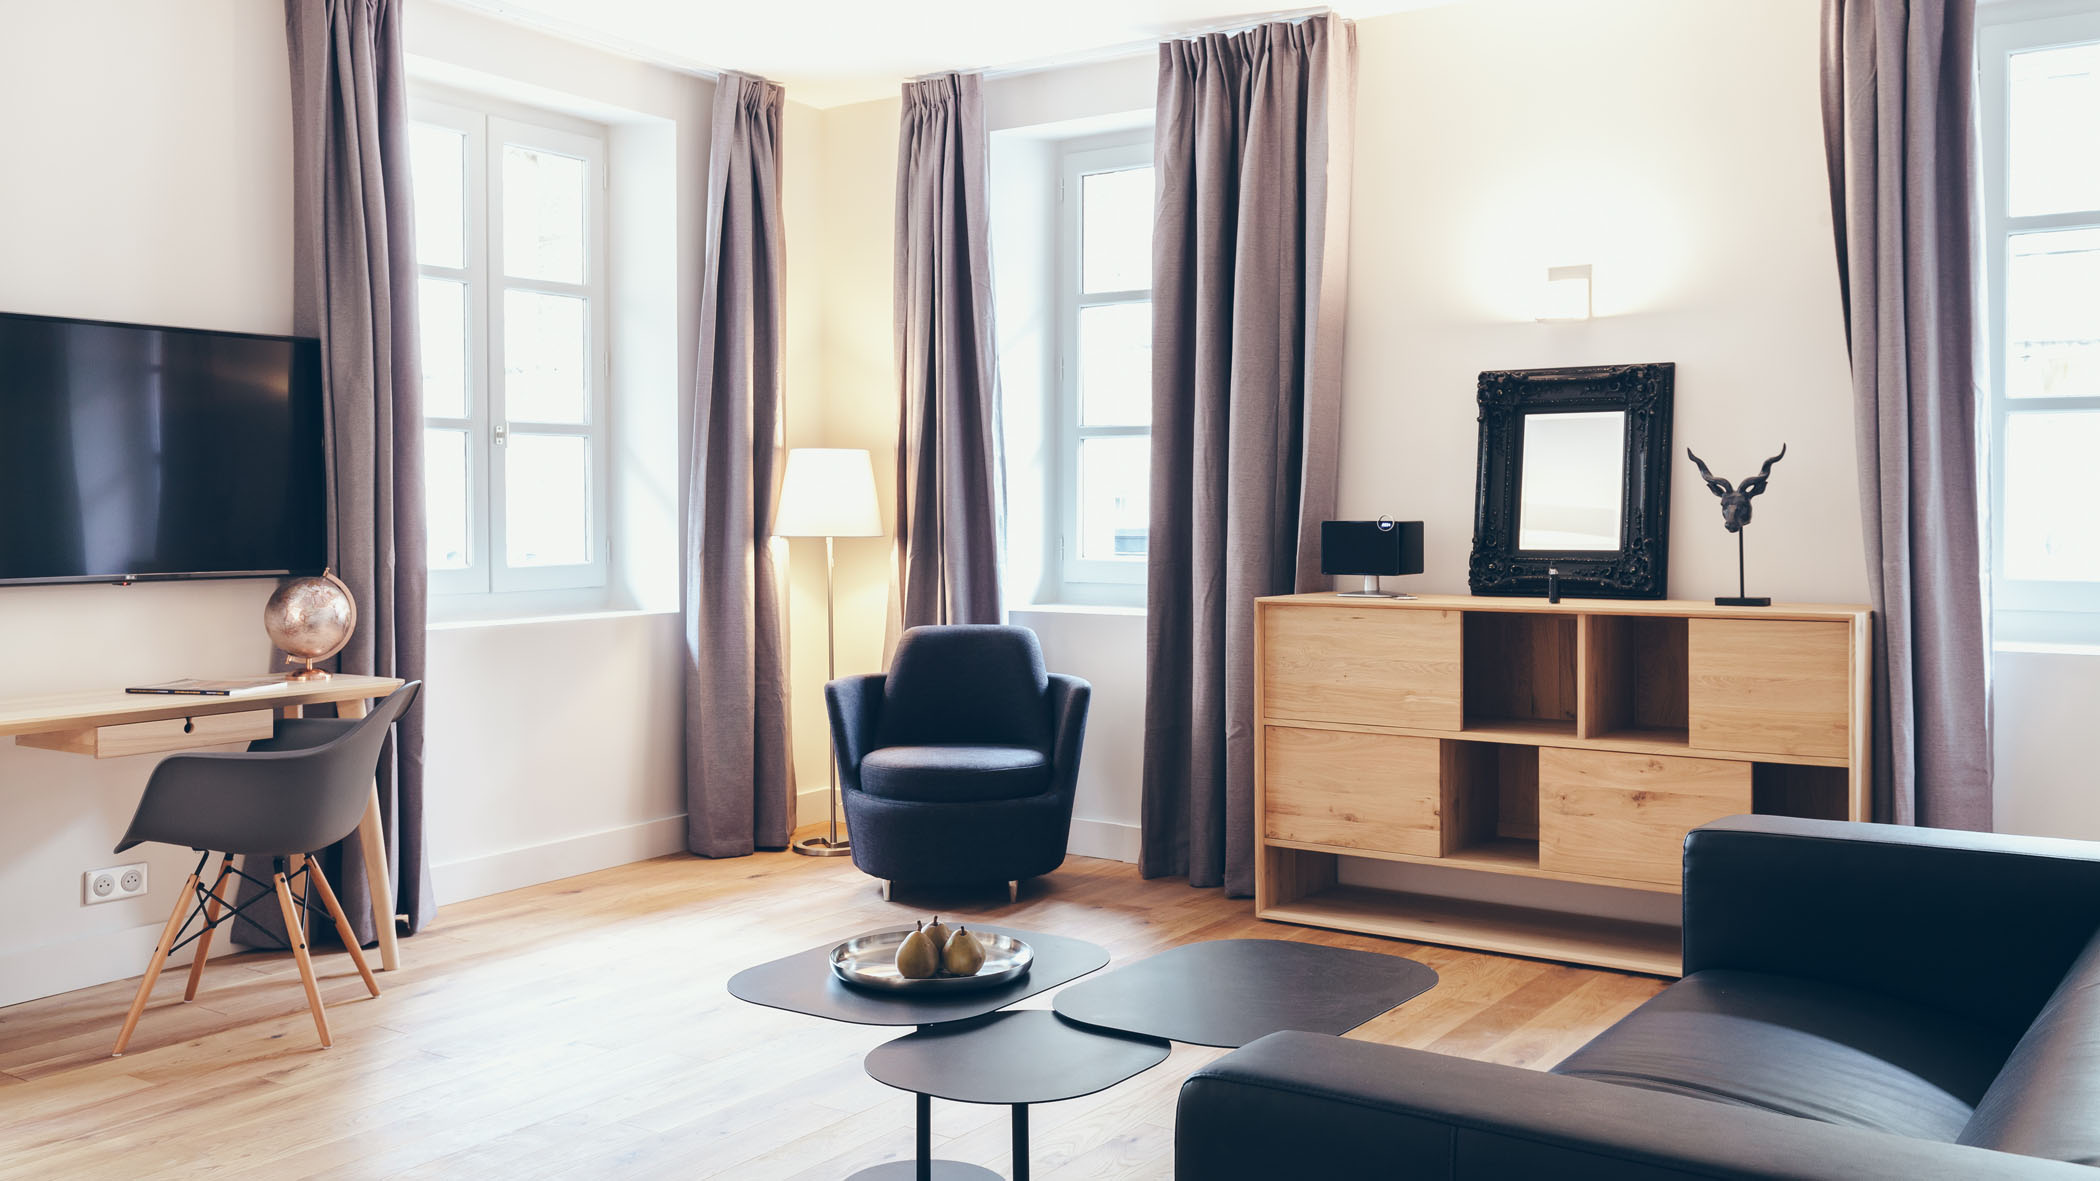 Cours de l'Intendance rental apartment in Bordeaux